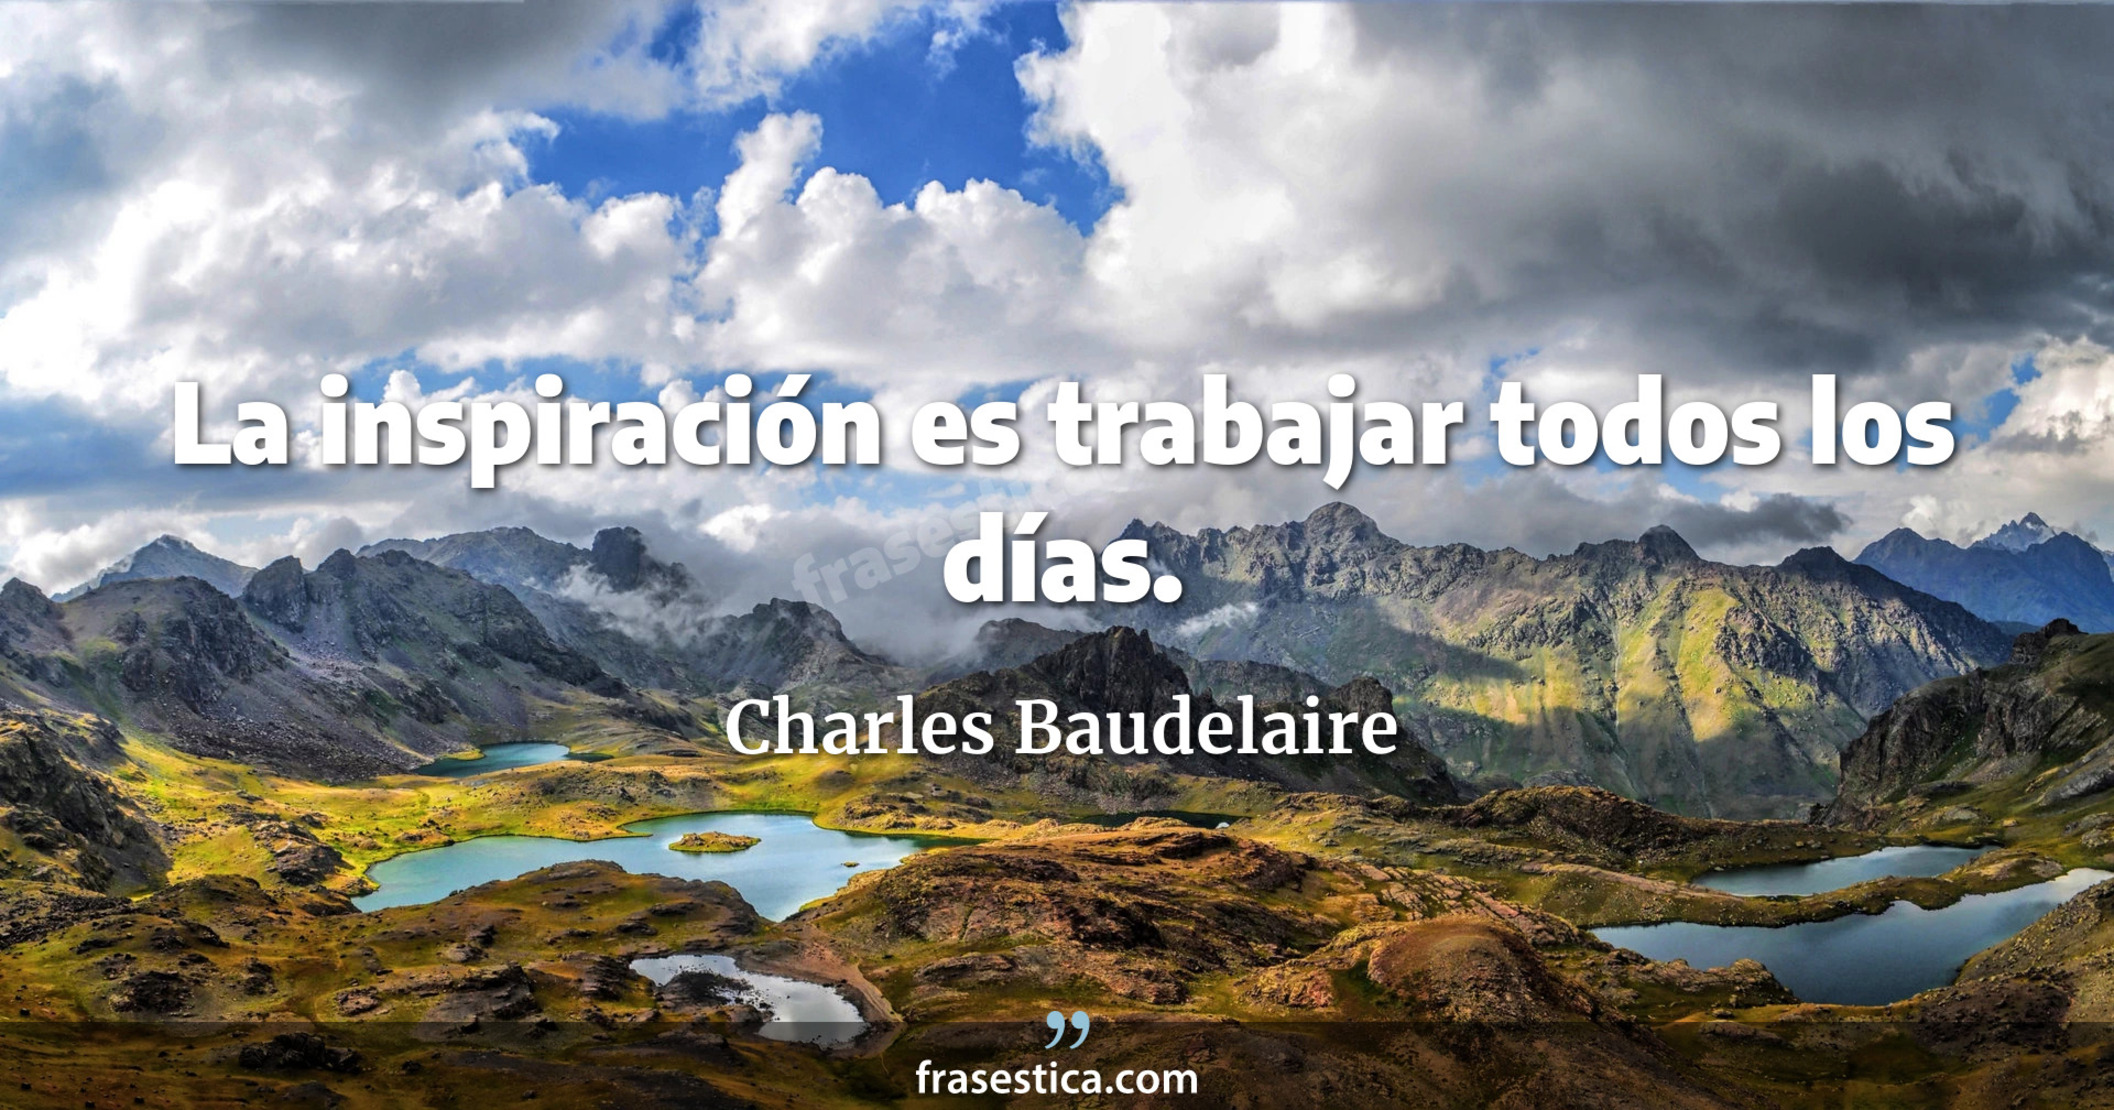 La inspiración es trabajar todos los días. - Charles Baudelaire